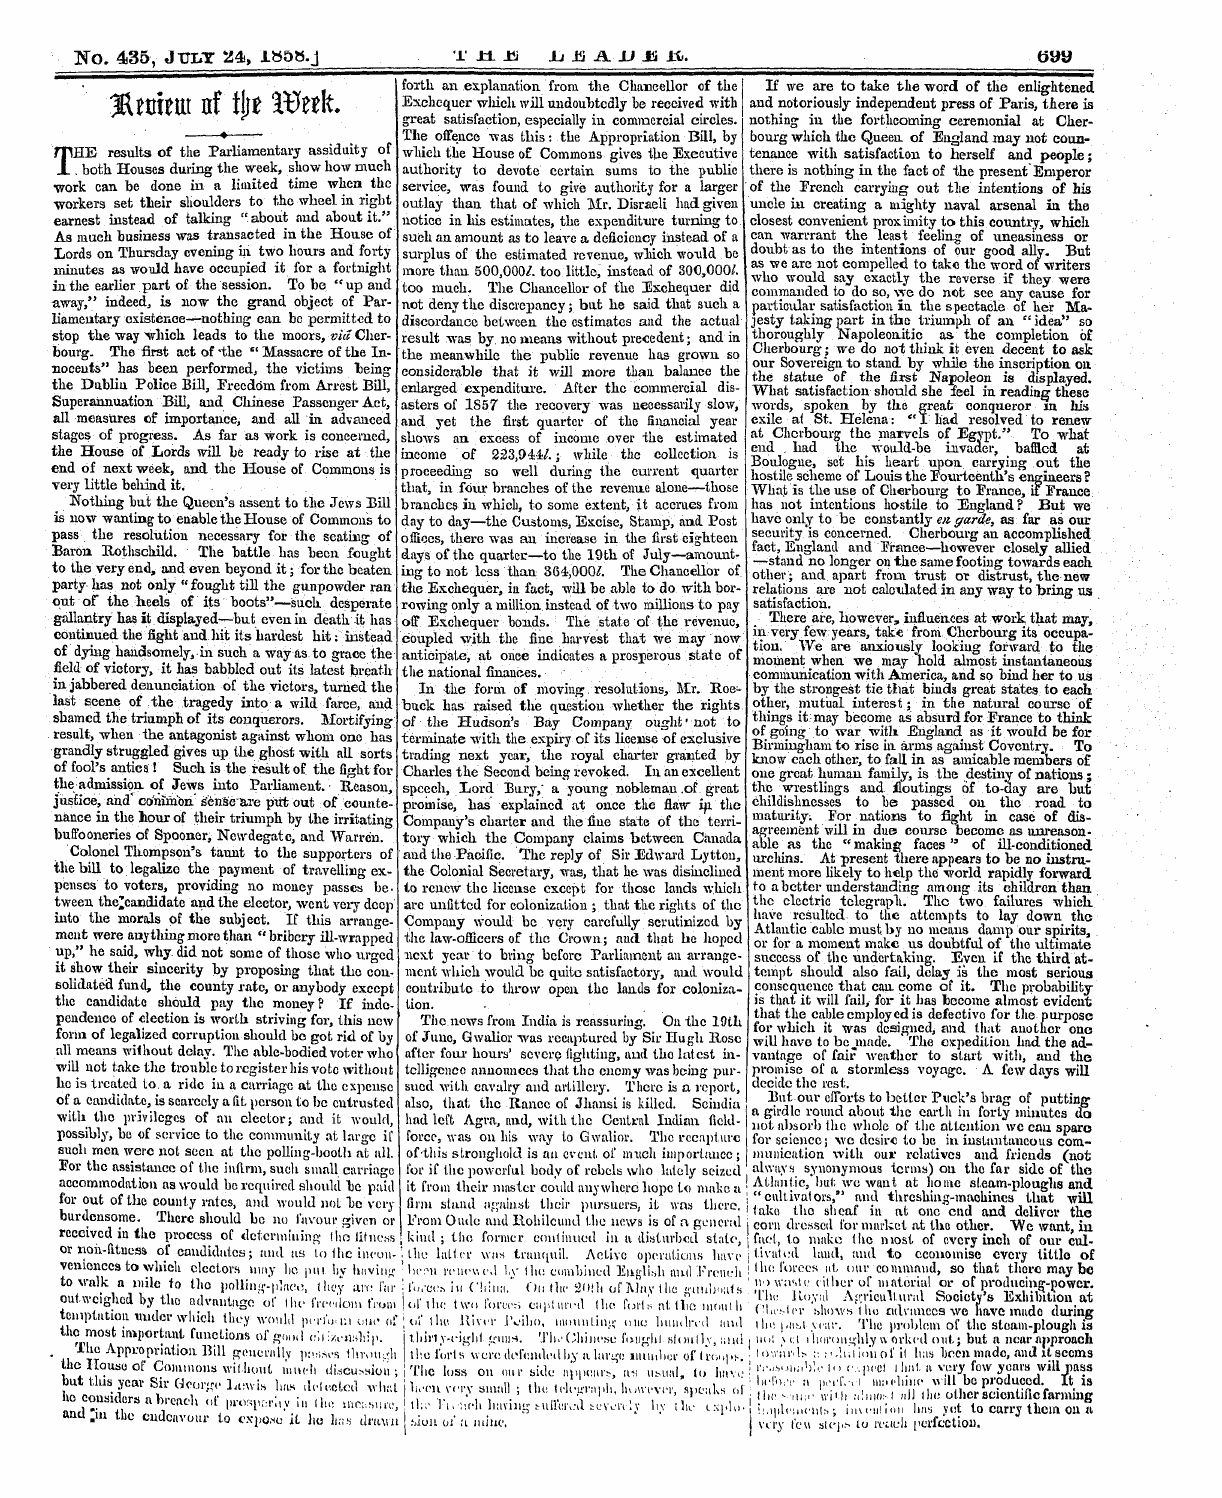 Leader (1850-1860): jS F Y, 1st edition - 'Kl Ttliptlt Ilf T\\T ^0tt\T ^ *